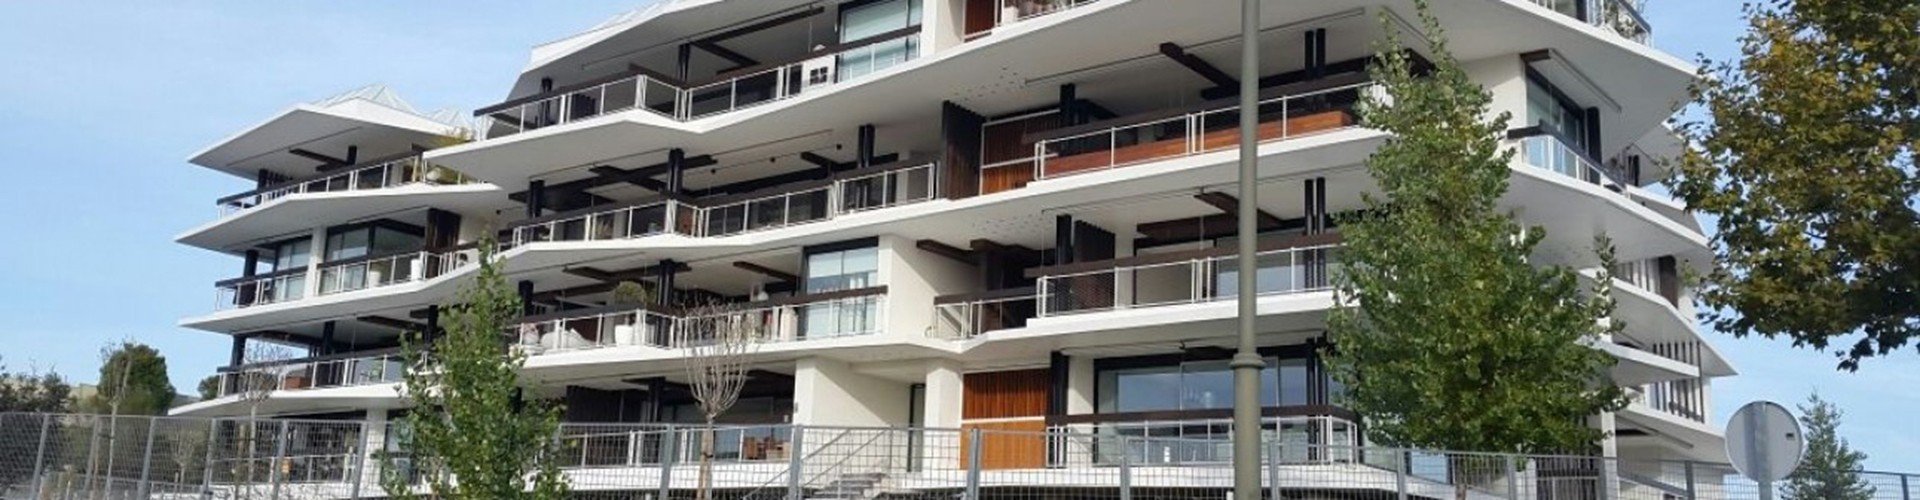 Edificio de viviendas en Panamá :: OBRAS EN EJECUCION :: Reynalco